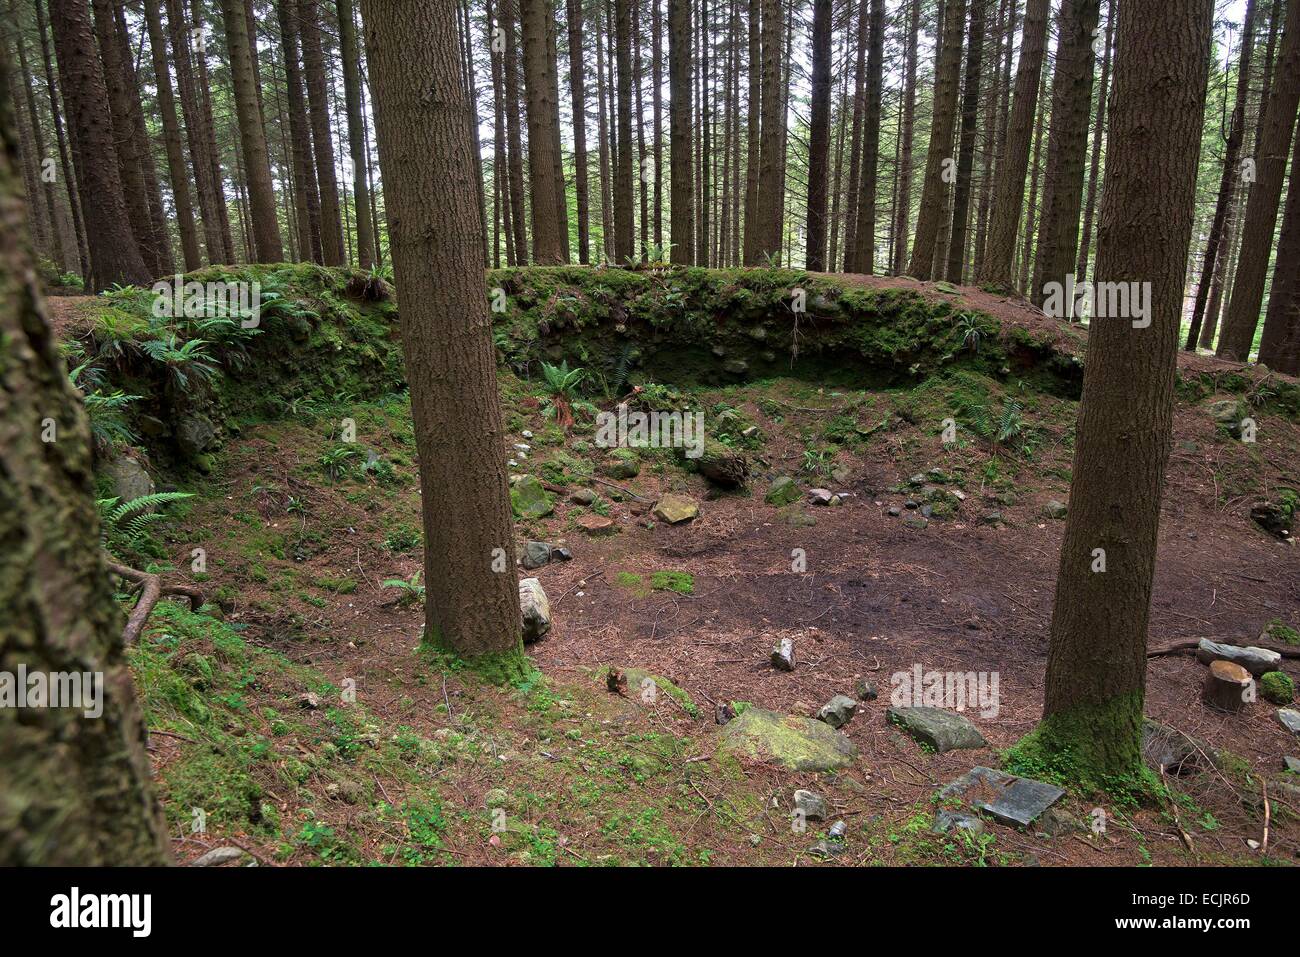 Royaume-uni, Irlande du Nord, County Down, Bryansford, le verdoyant et dynamique Tollymore Forest Park est l'endroit où est l'objet de harcèlement criminel par Ramsay Snow, et a été utilisé pour illustrer les terres couvertes de neige entre Winterfell et le mur Banque D'Images